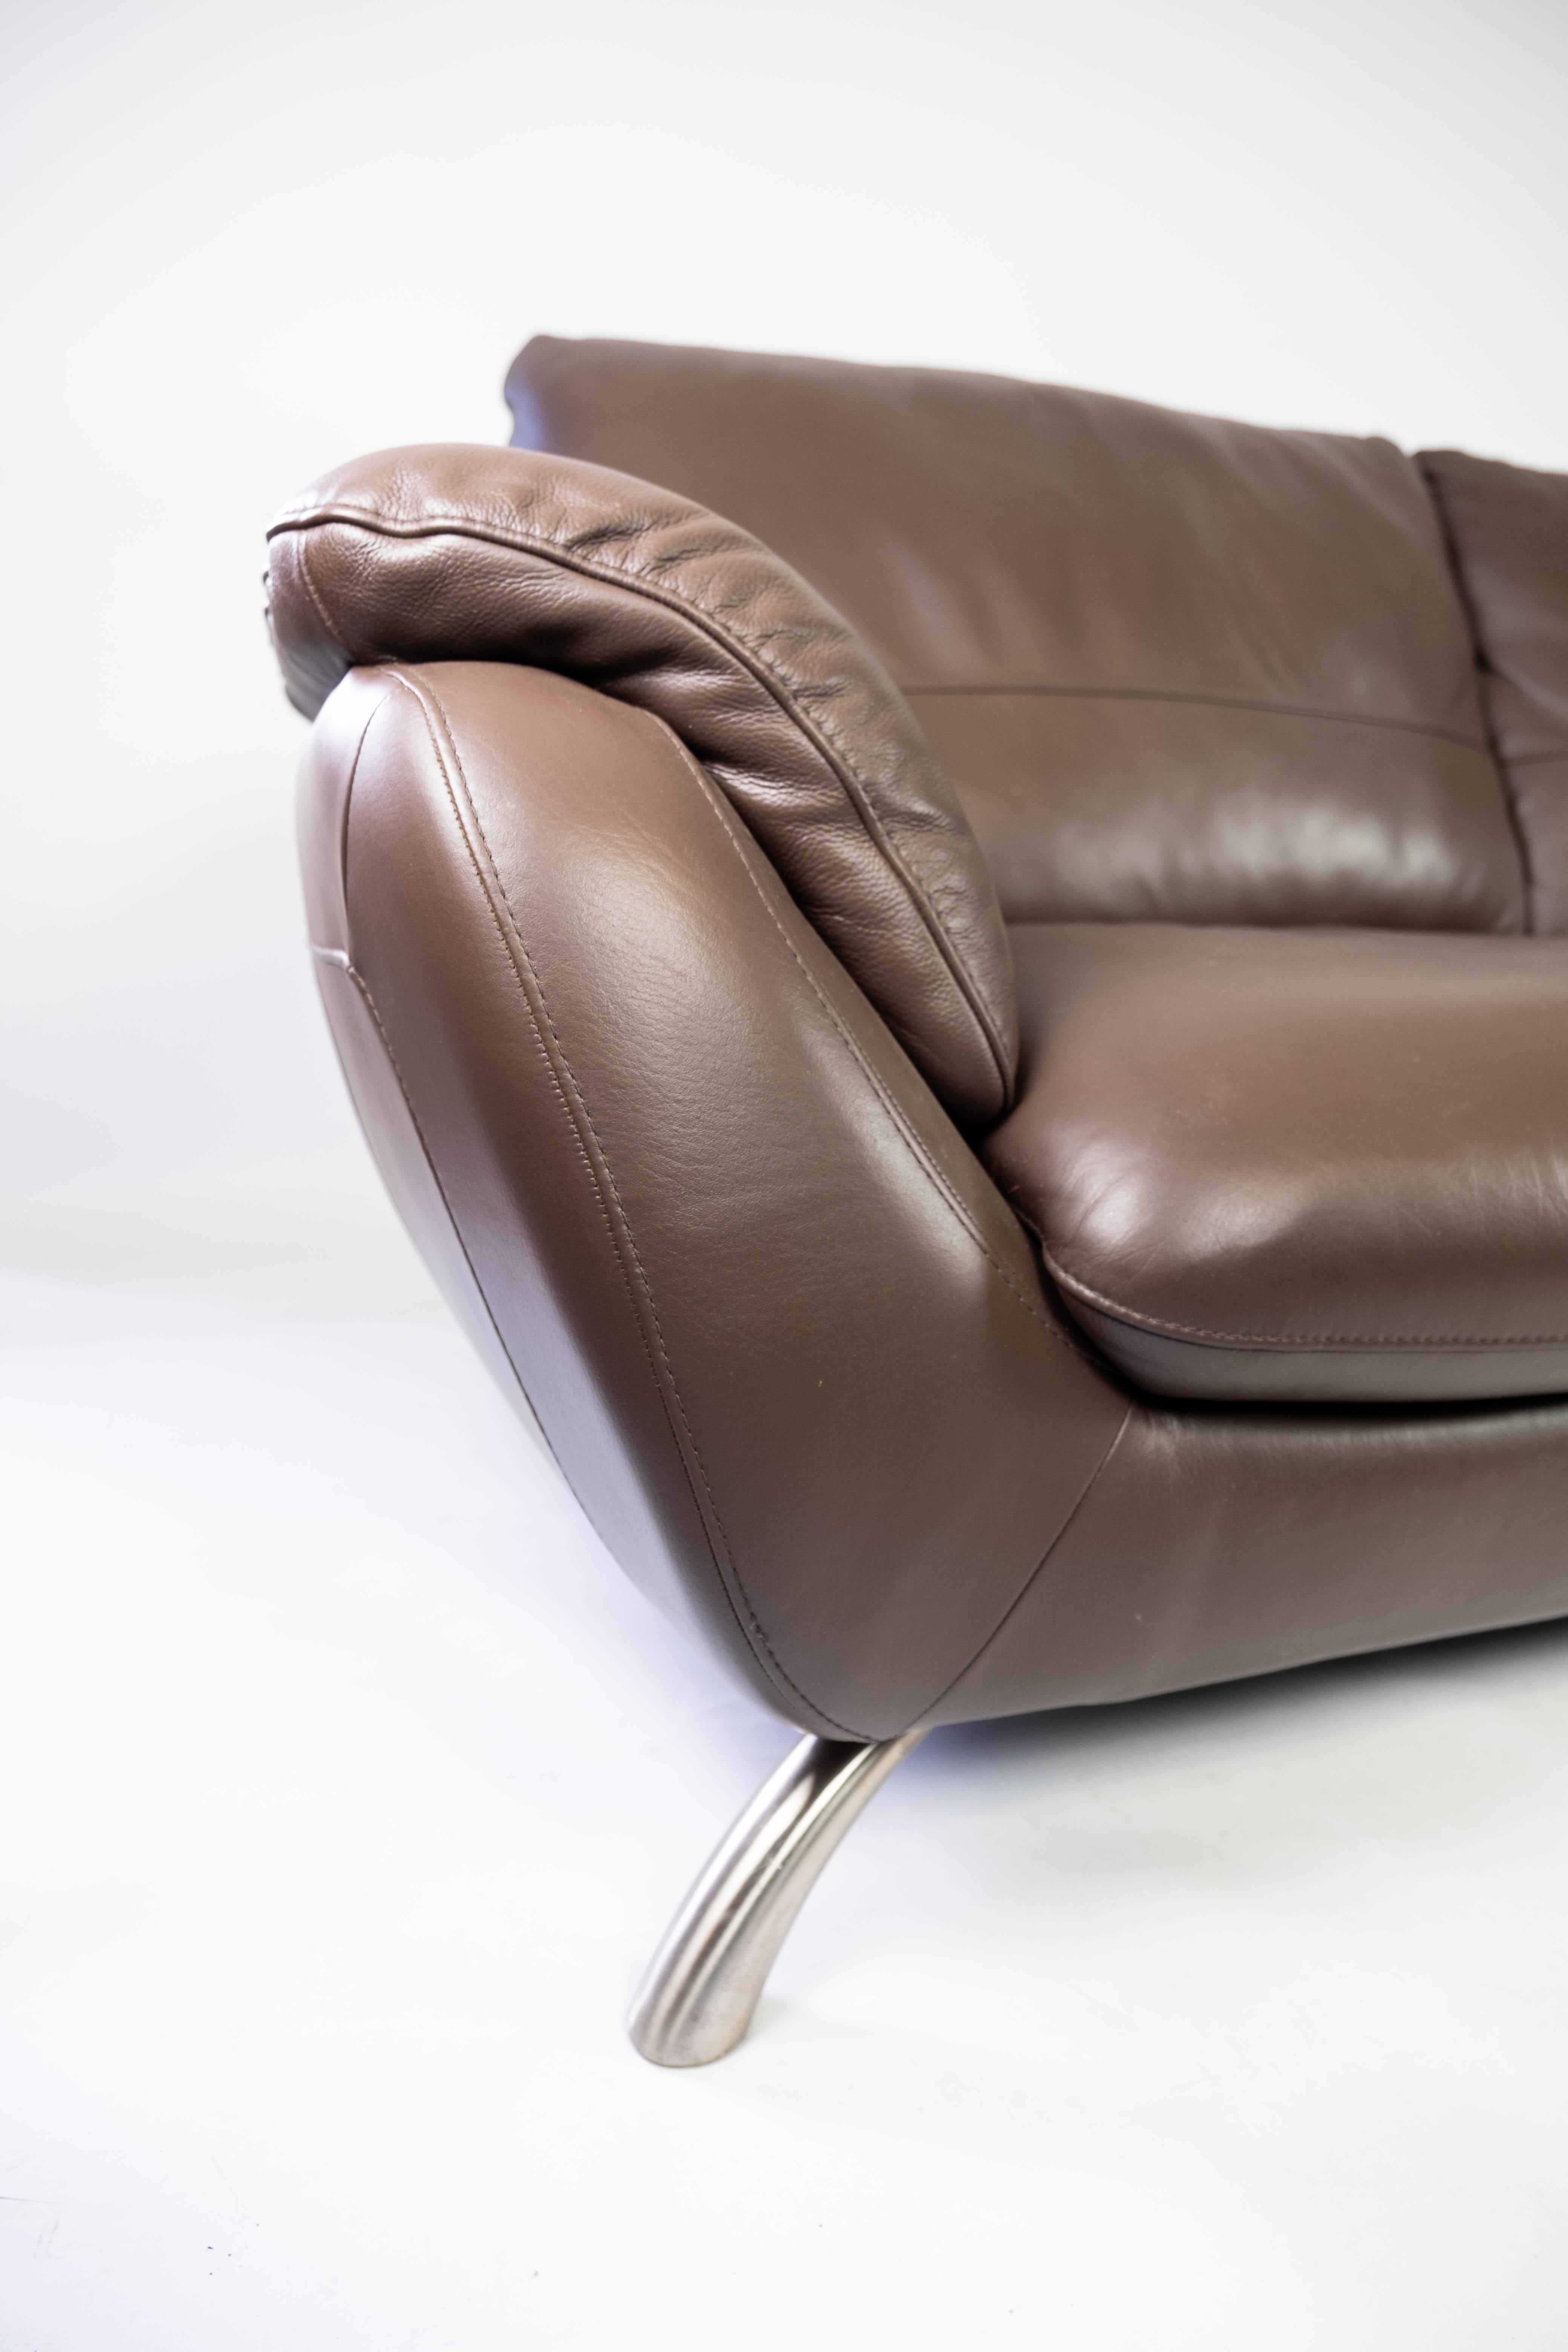 Le grand canapé deux places en cuir marron avec une structure métallique, fabriqué par Italsofa, est un meuble impressionnant qui respire à la fois le style et le confort. Avec son design élégant et ses matériaux durables, ce canapé est un choix